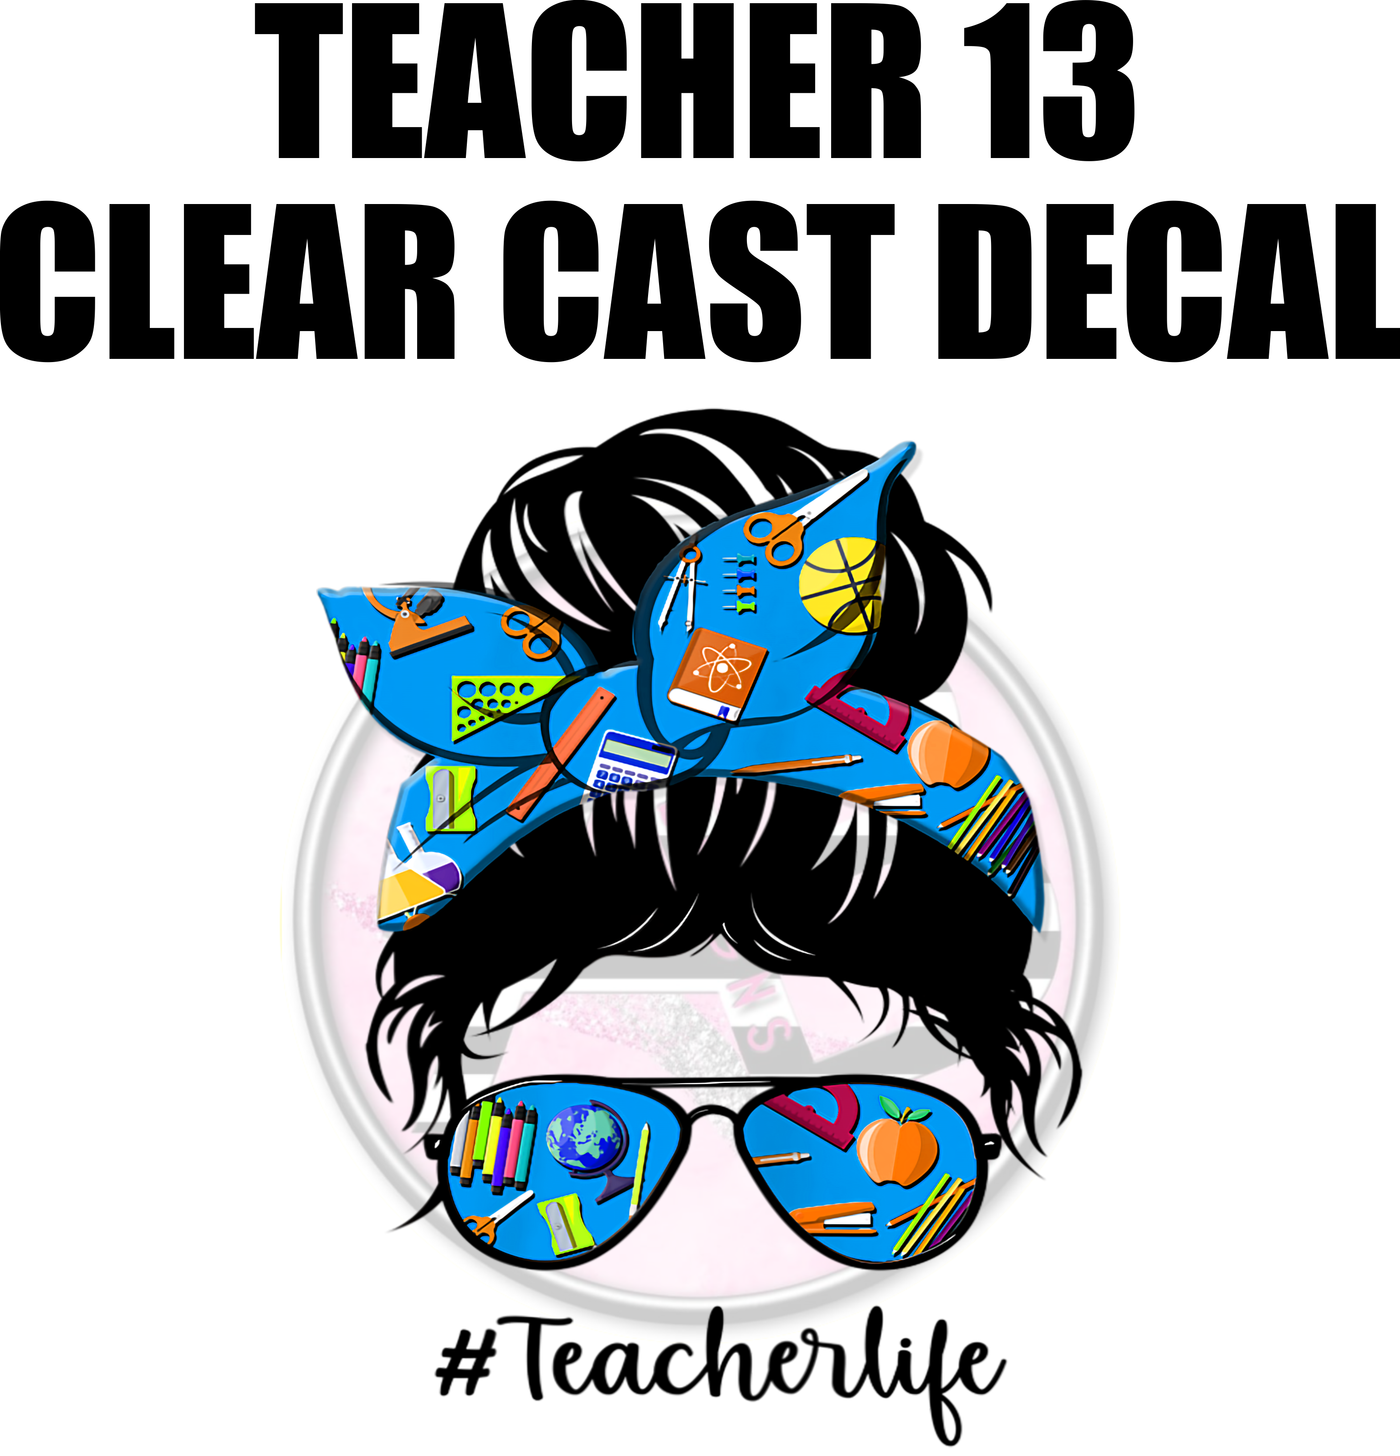 Teacher 13 - Clear Cast Decal